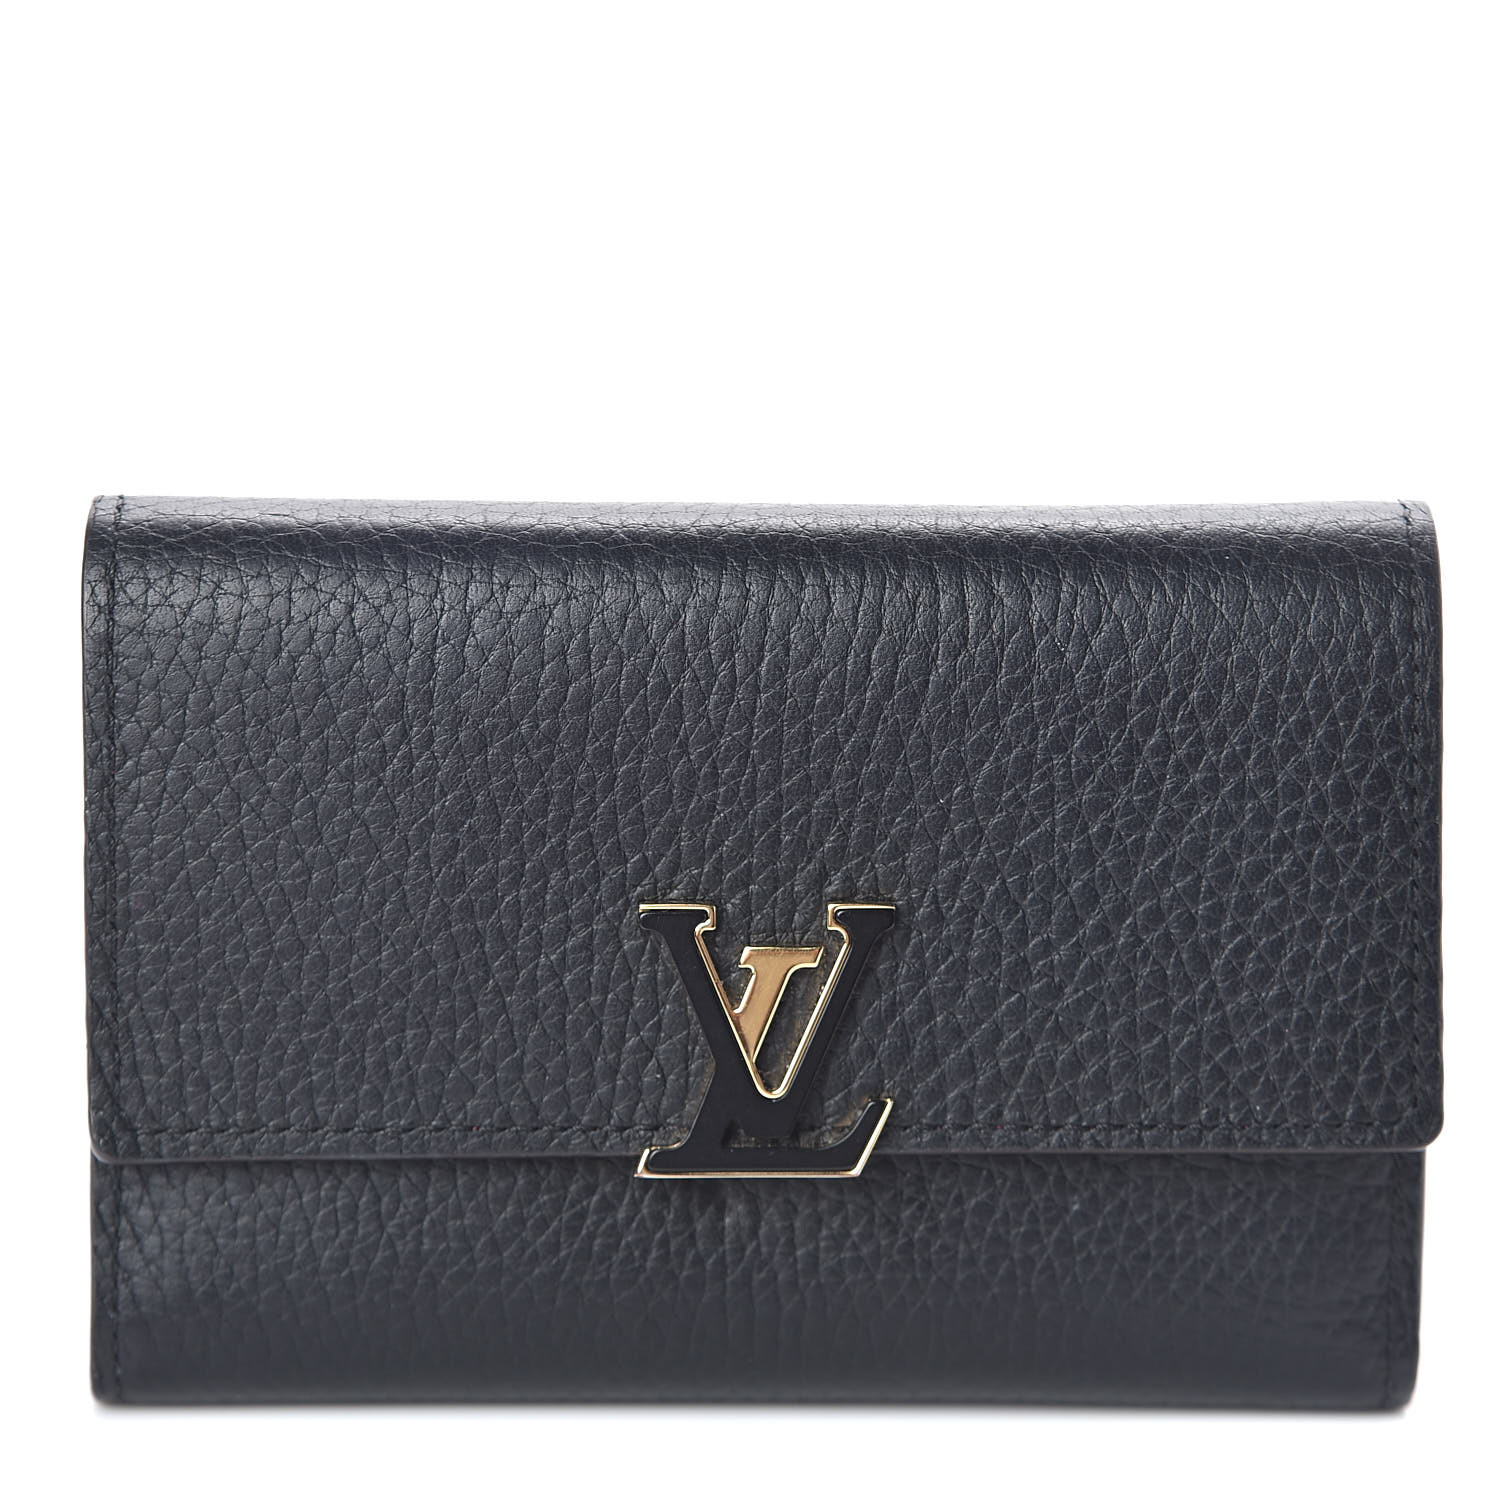 LOUIS VUITTON Taurillon Capucines Compact Wallet Black 511621